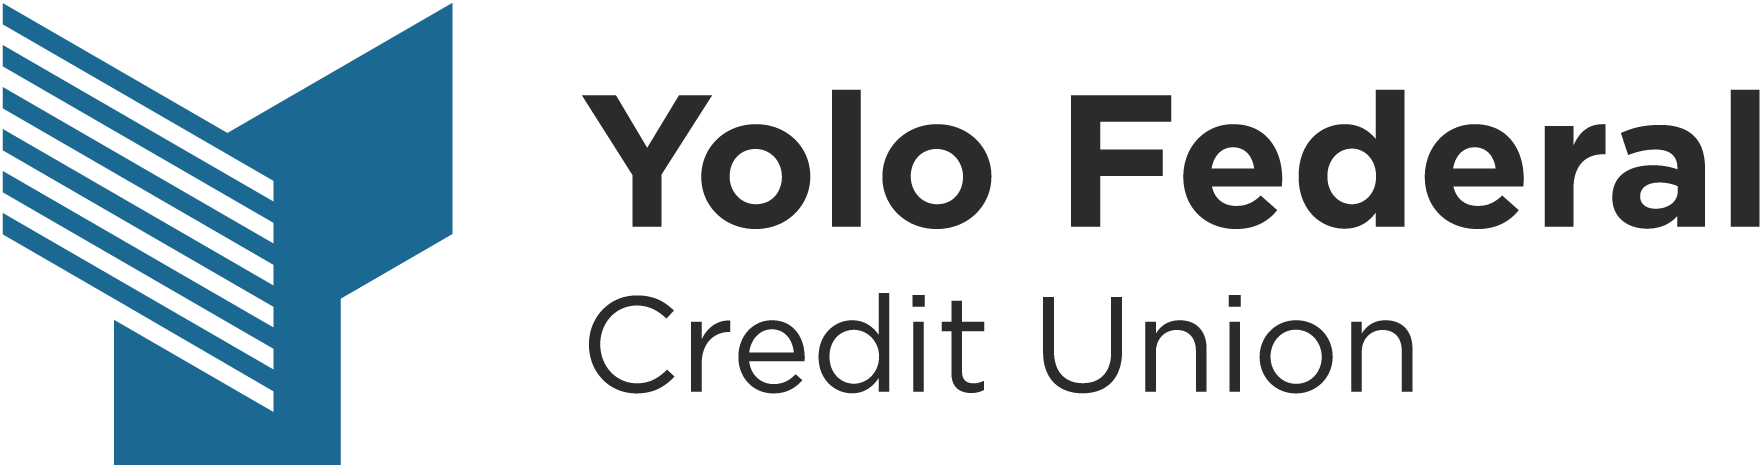 yolo federal credit union logo